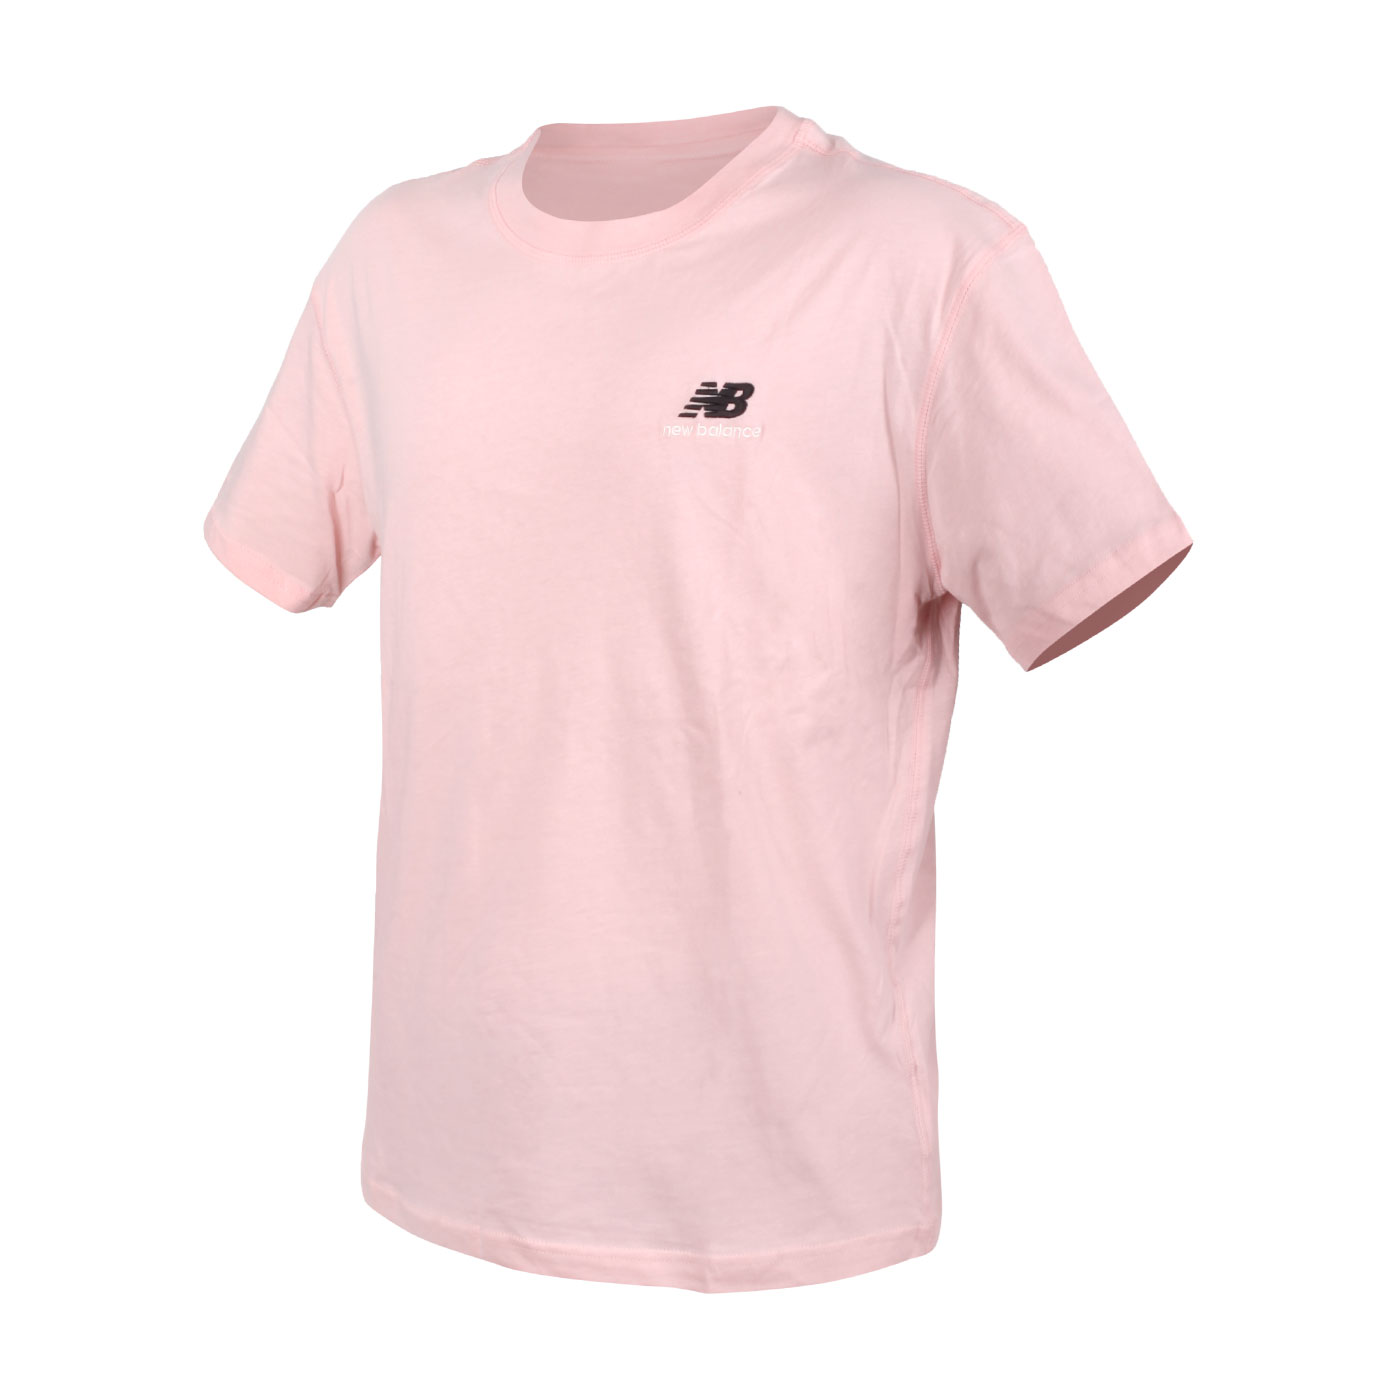 NEW BALANCE 男女款短袖T恤 UT21503PIE - 粉紅黑白